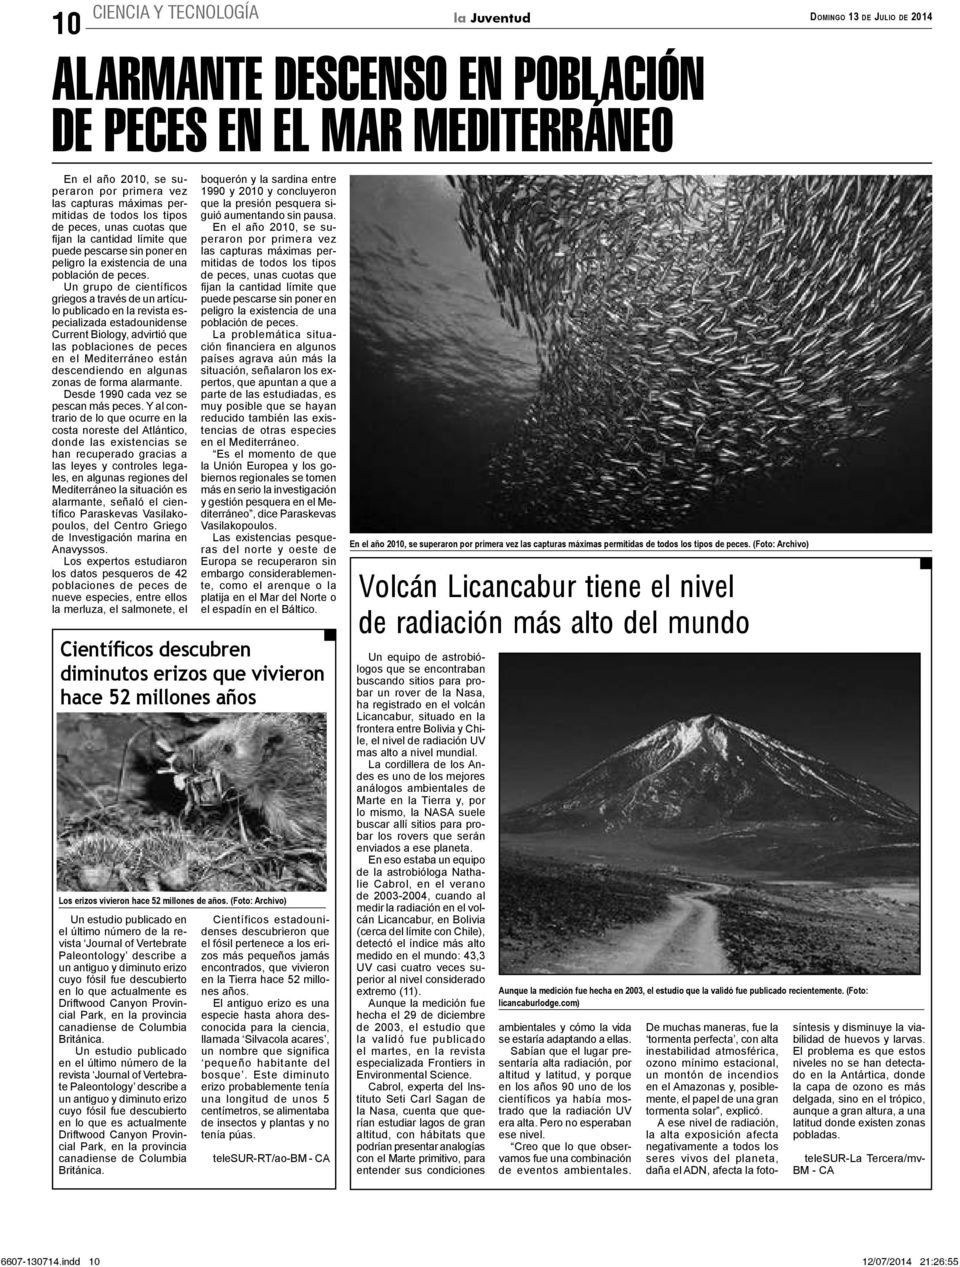 Un grupo de científicos griegos a través de un artículo publicado en la revista especializada estadounidense Current Biology, advirtió que las poblaciones de peces en el Mediterráneo están